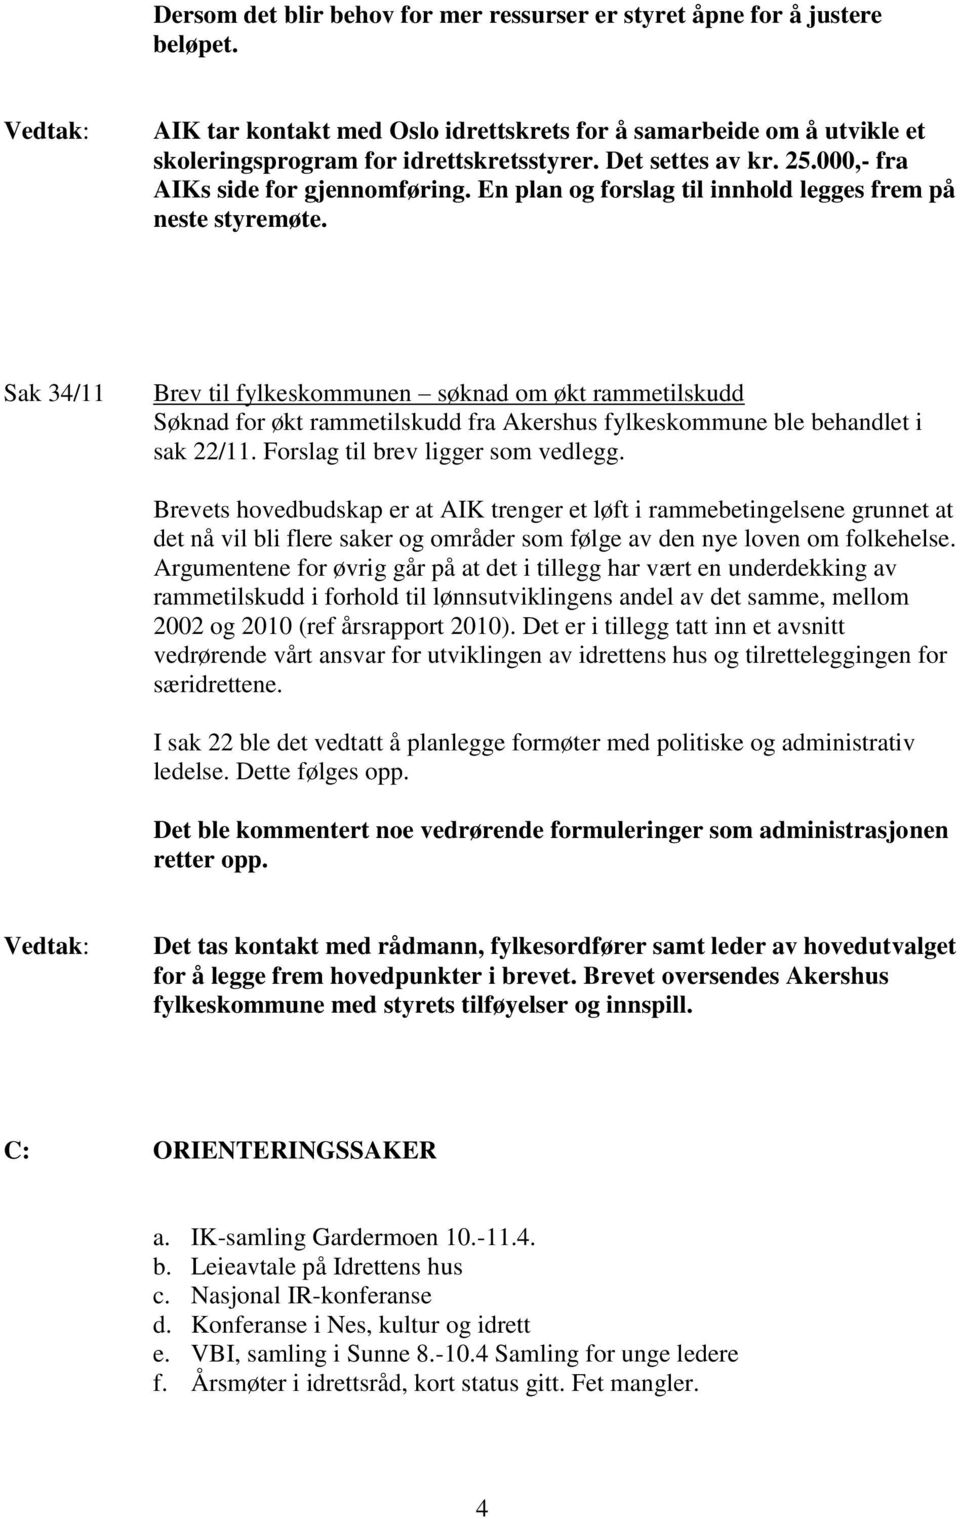 Sak 34/11 Brev til fylkeskommunen søknad om økt rammetilskudd Søknad for økt rammetilskudd fra Akershus fylkeskommune ble behandlet i sak 22/11. Forslag til brev ligger som vedlegg.